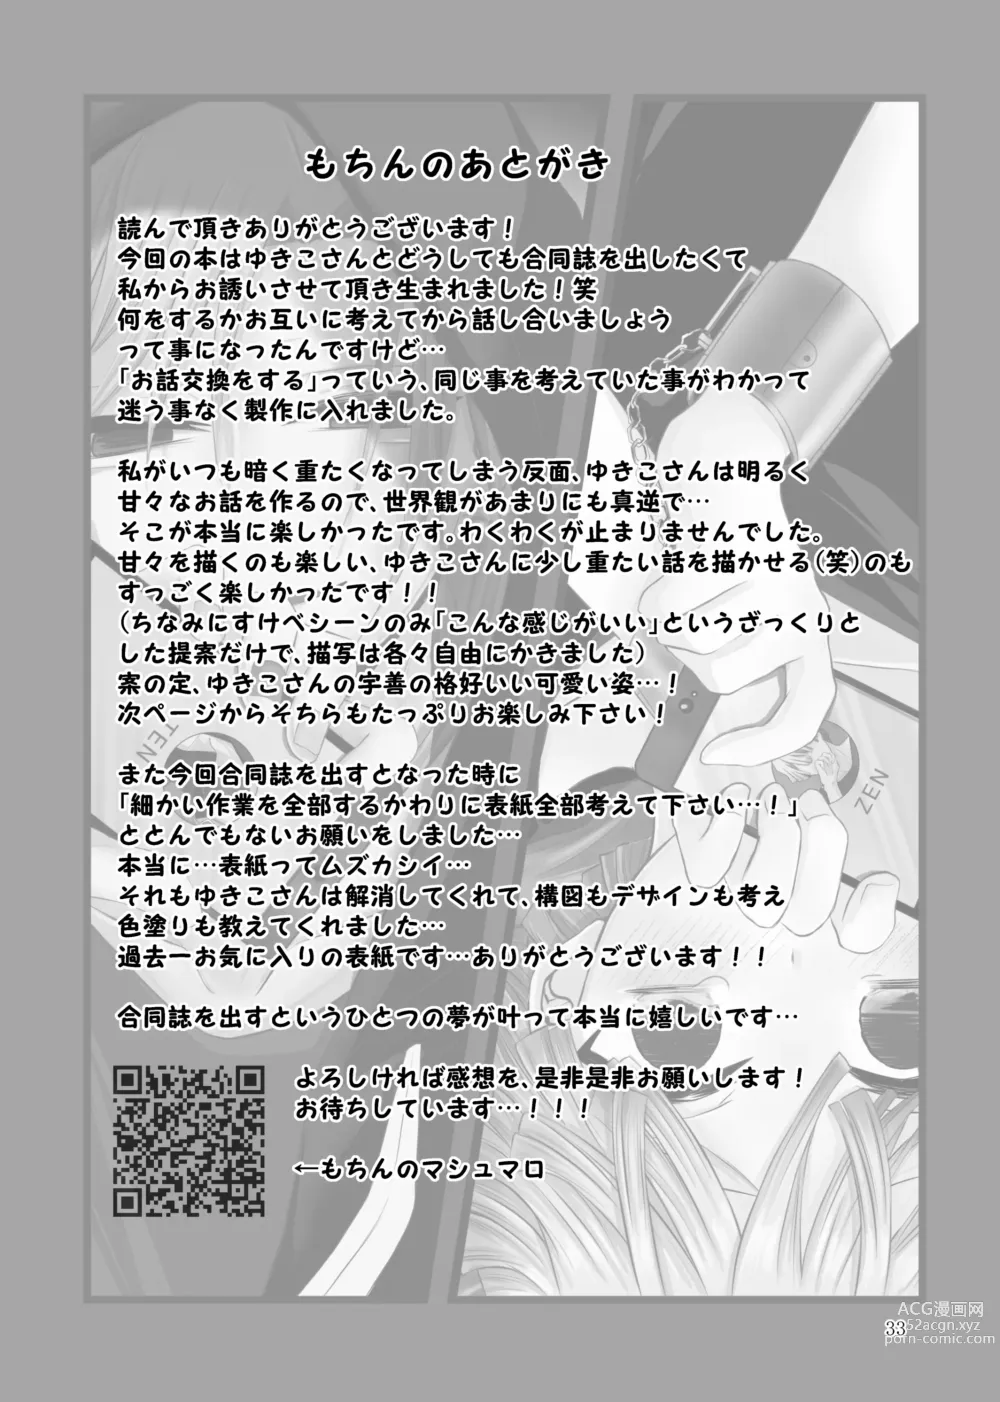 Page 61 of doujinshi Kore wa Play Desu!